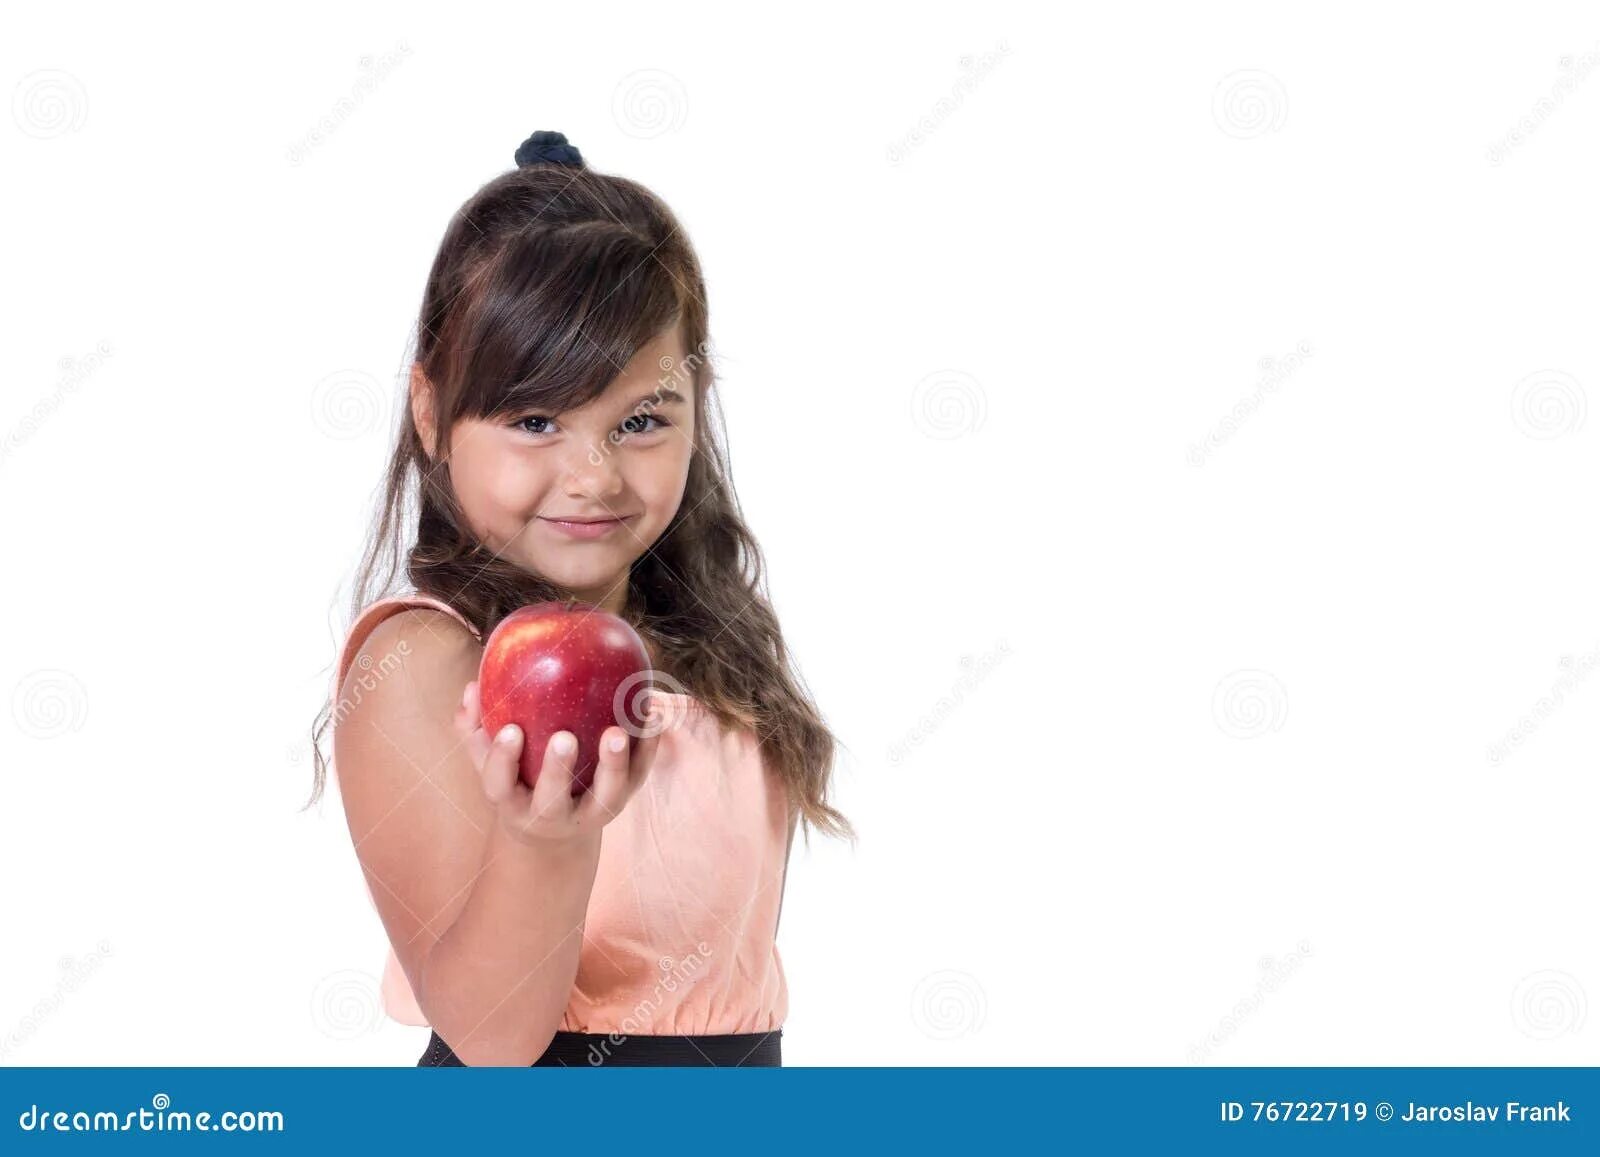 Трансляция маленьких девочек. Держит яблоко. Девочка держит в руке яблоко. Брюнетка с яблоком в Руха. Девочка с яблоком в руке.